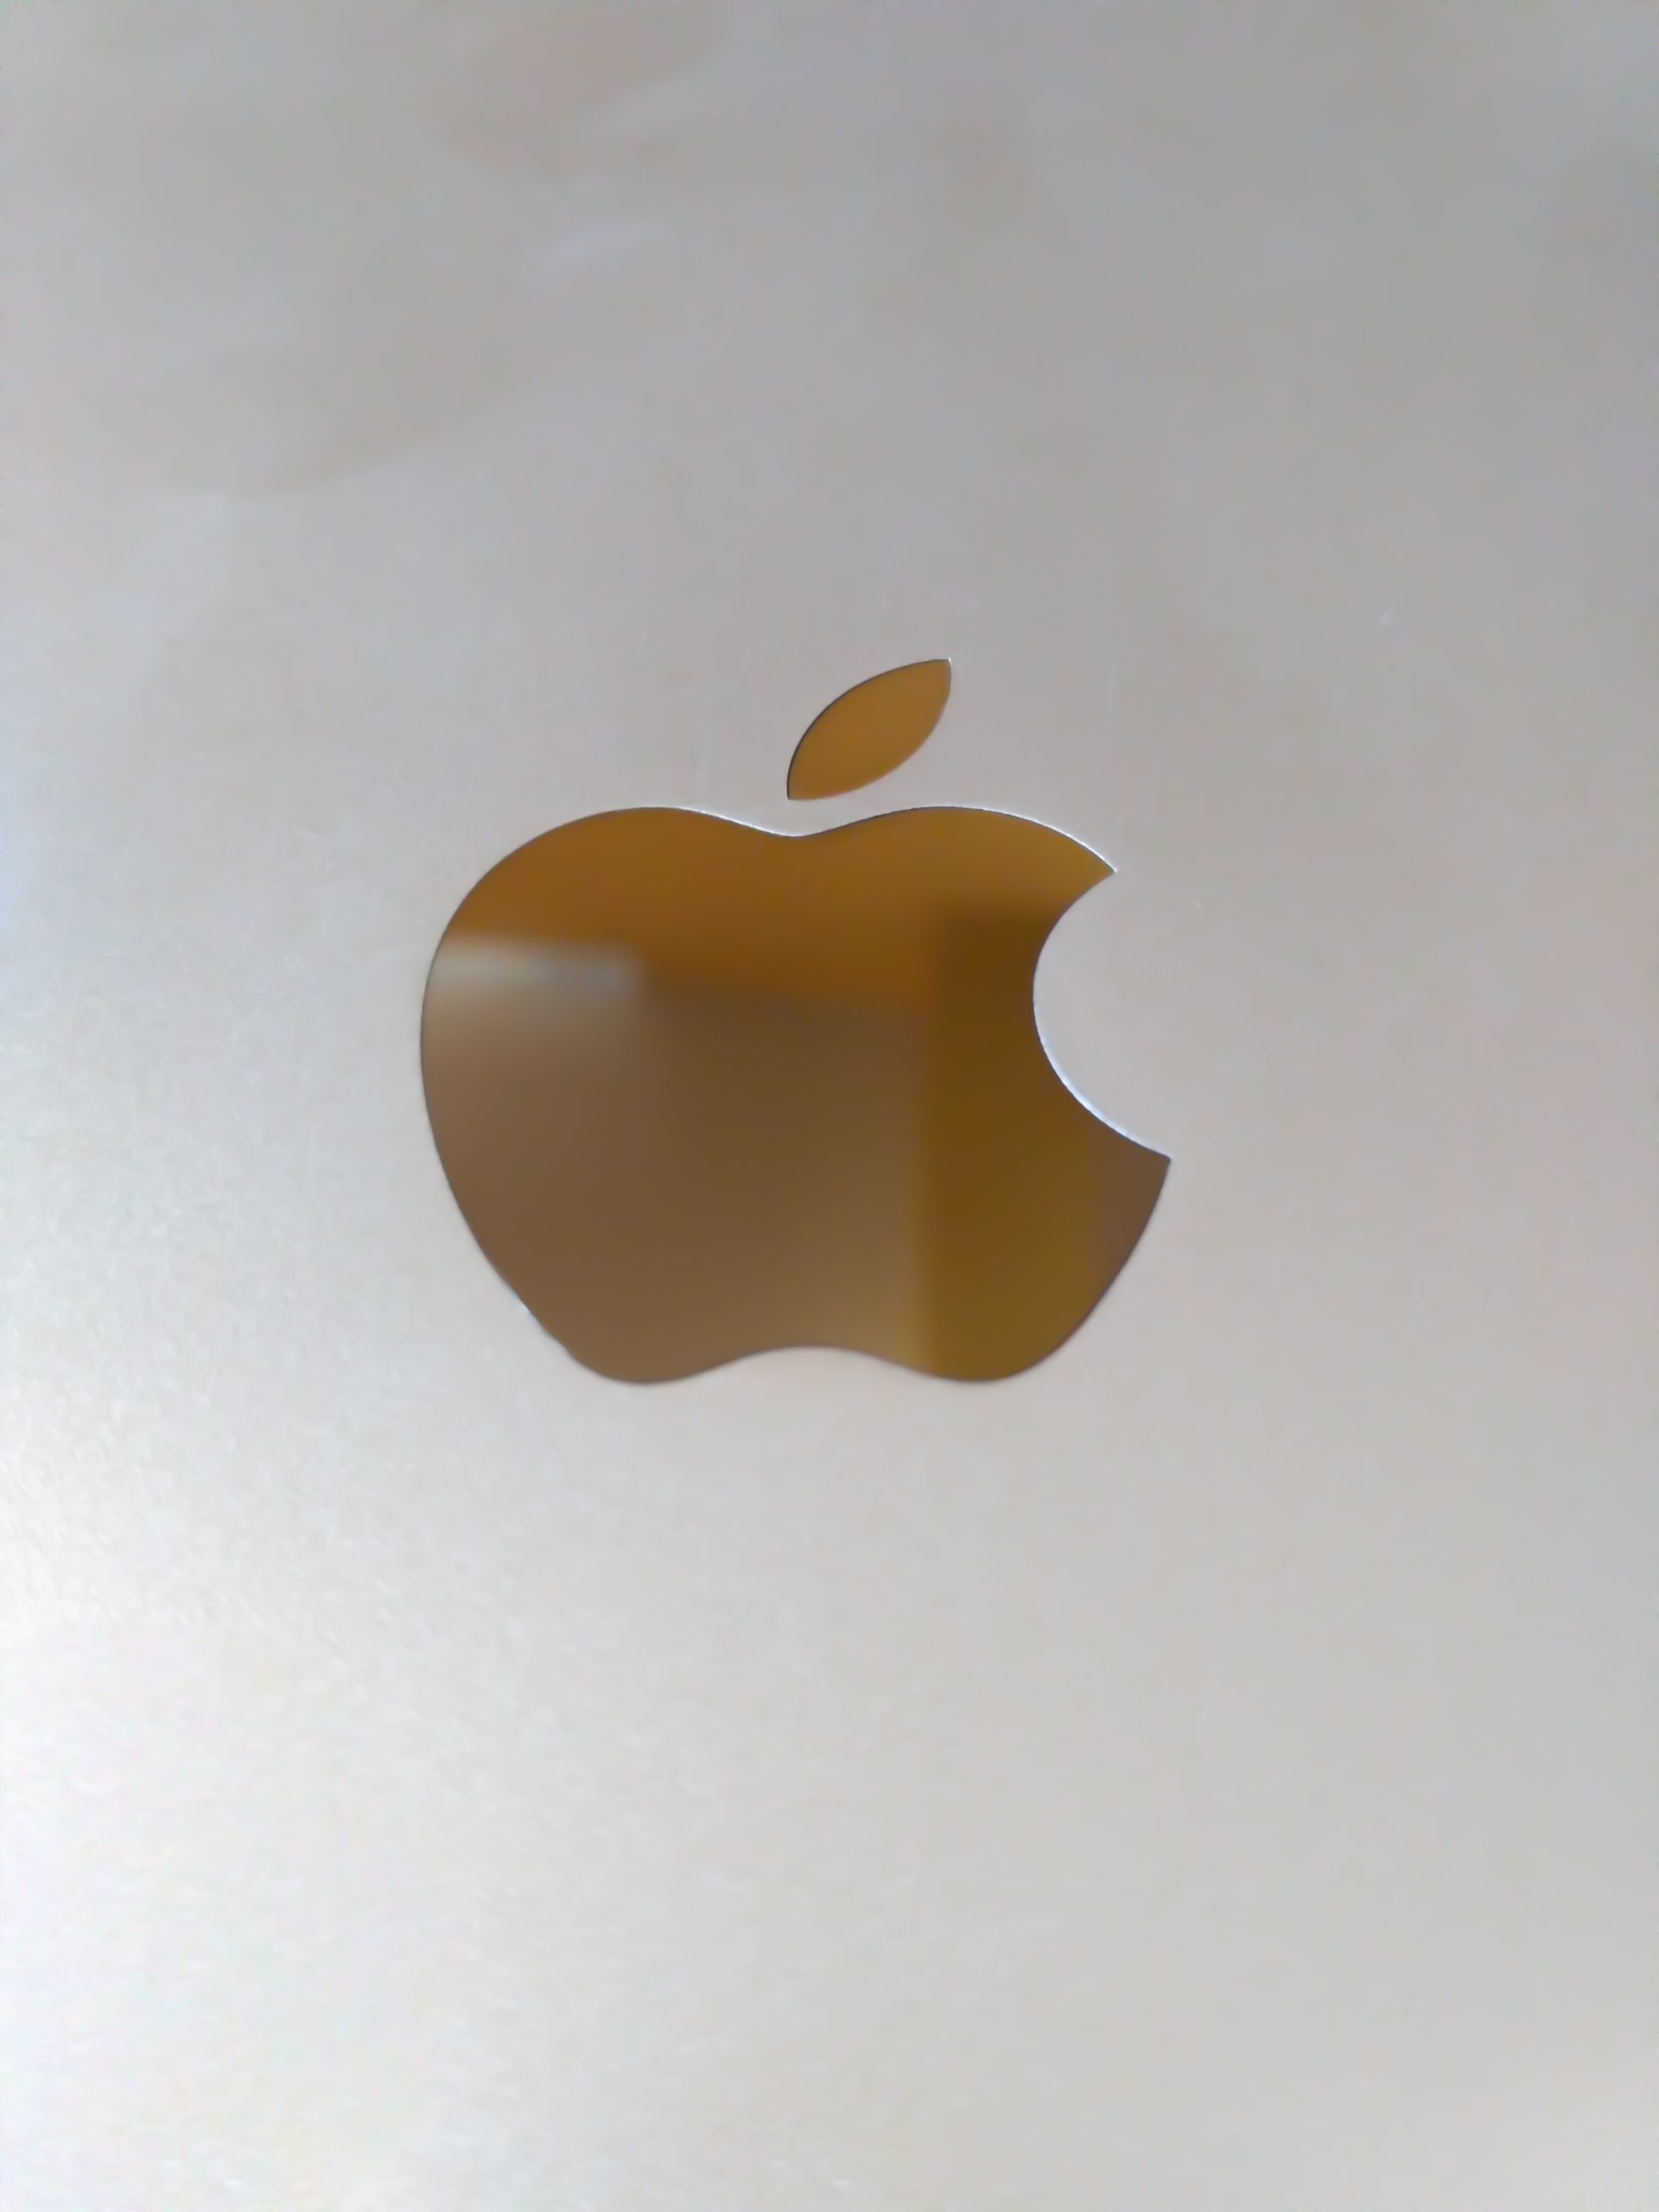 Logo of Apple company